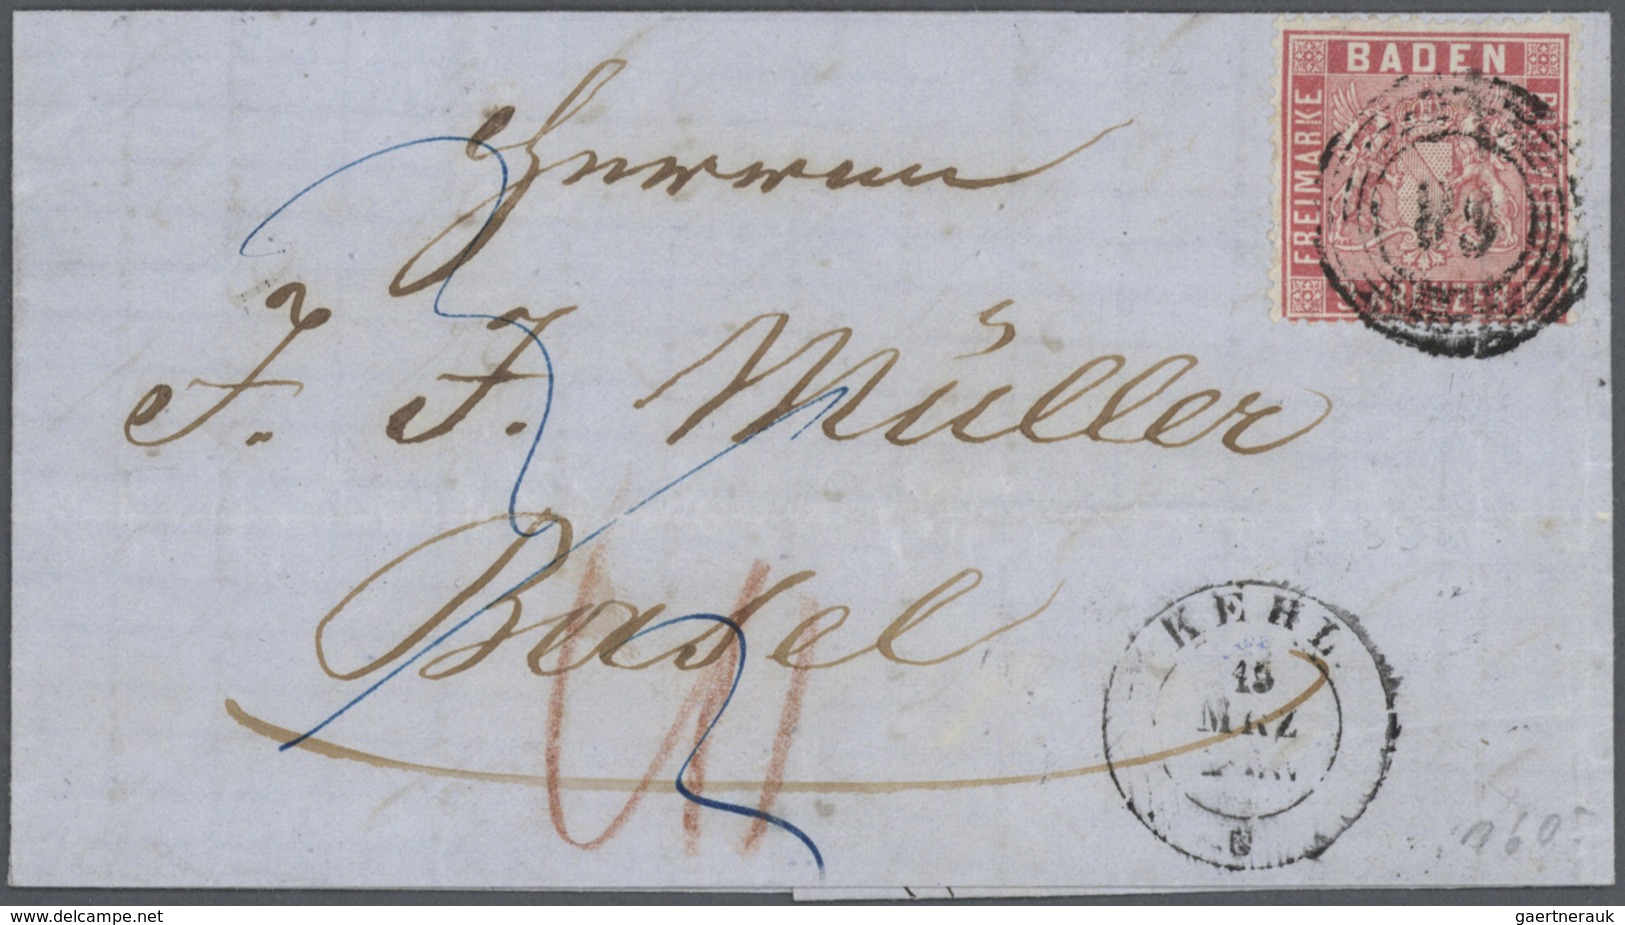 31171 Baden - Marken und Briefe: 1851/1875 (ca.) vielfältige STEMPELSAMMLUNG alphabetisch geordnet von A-Z